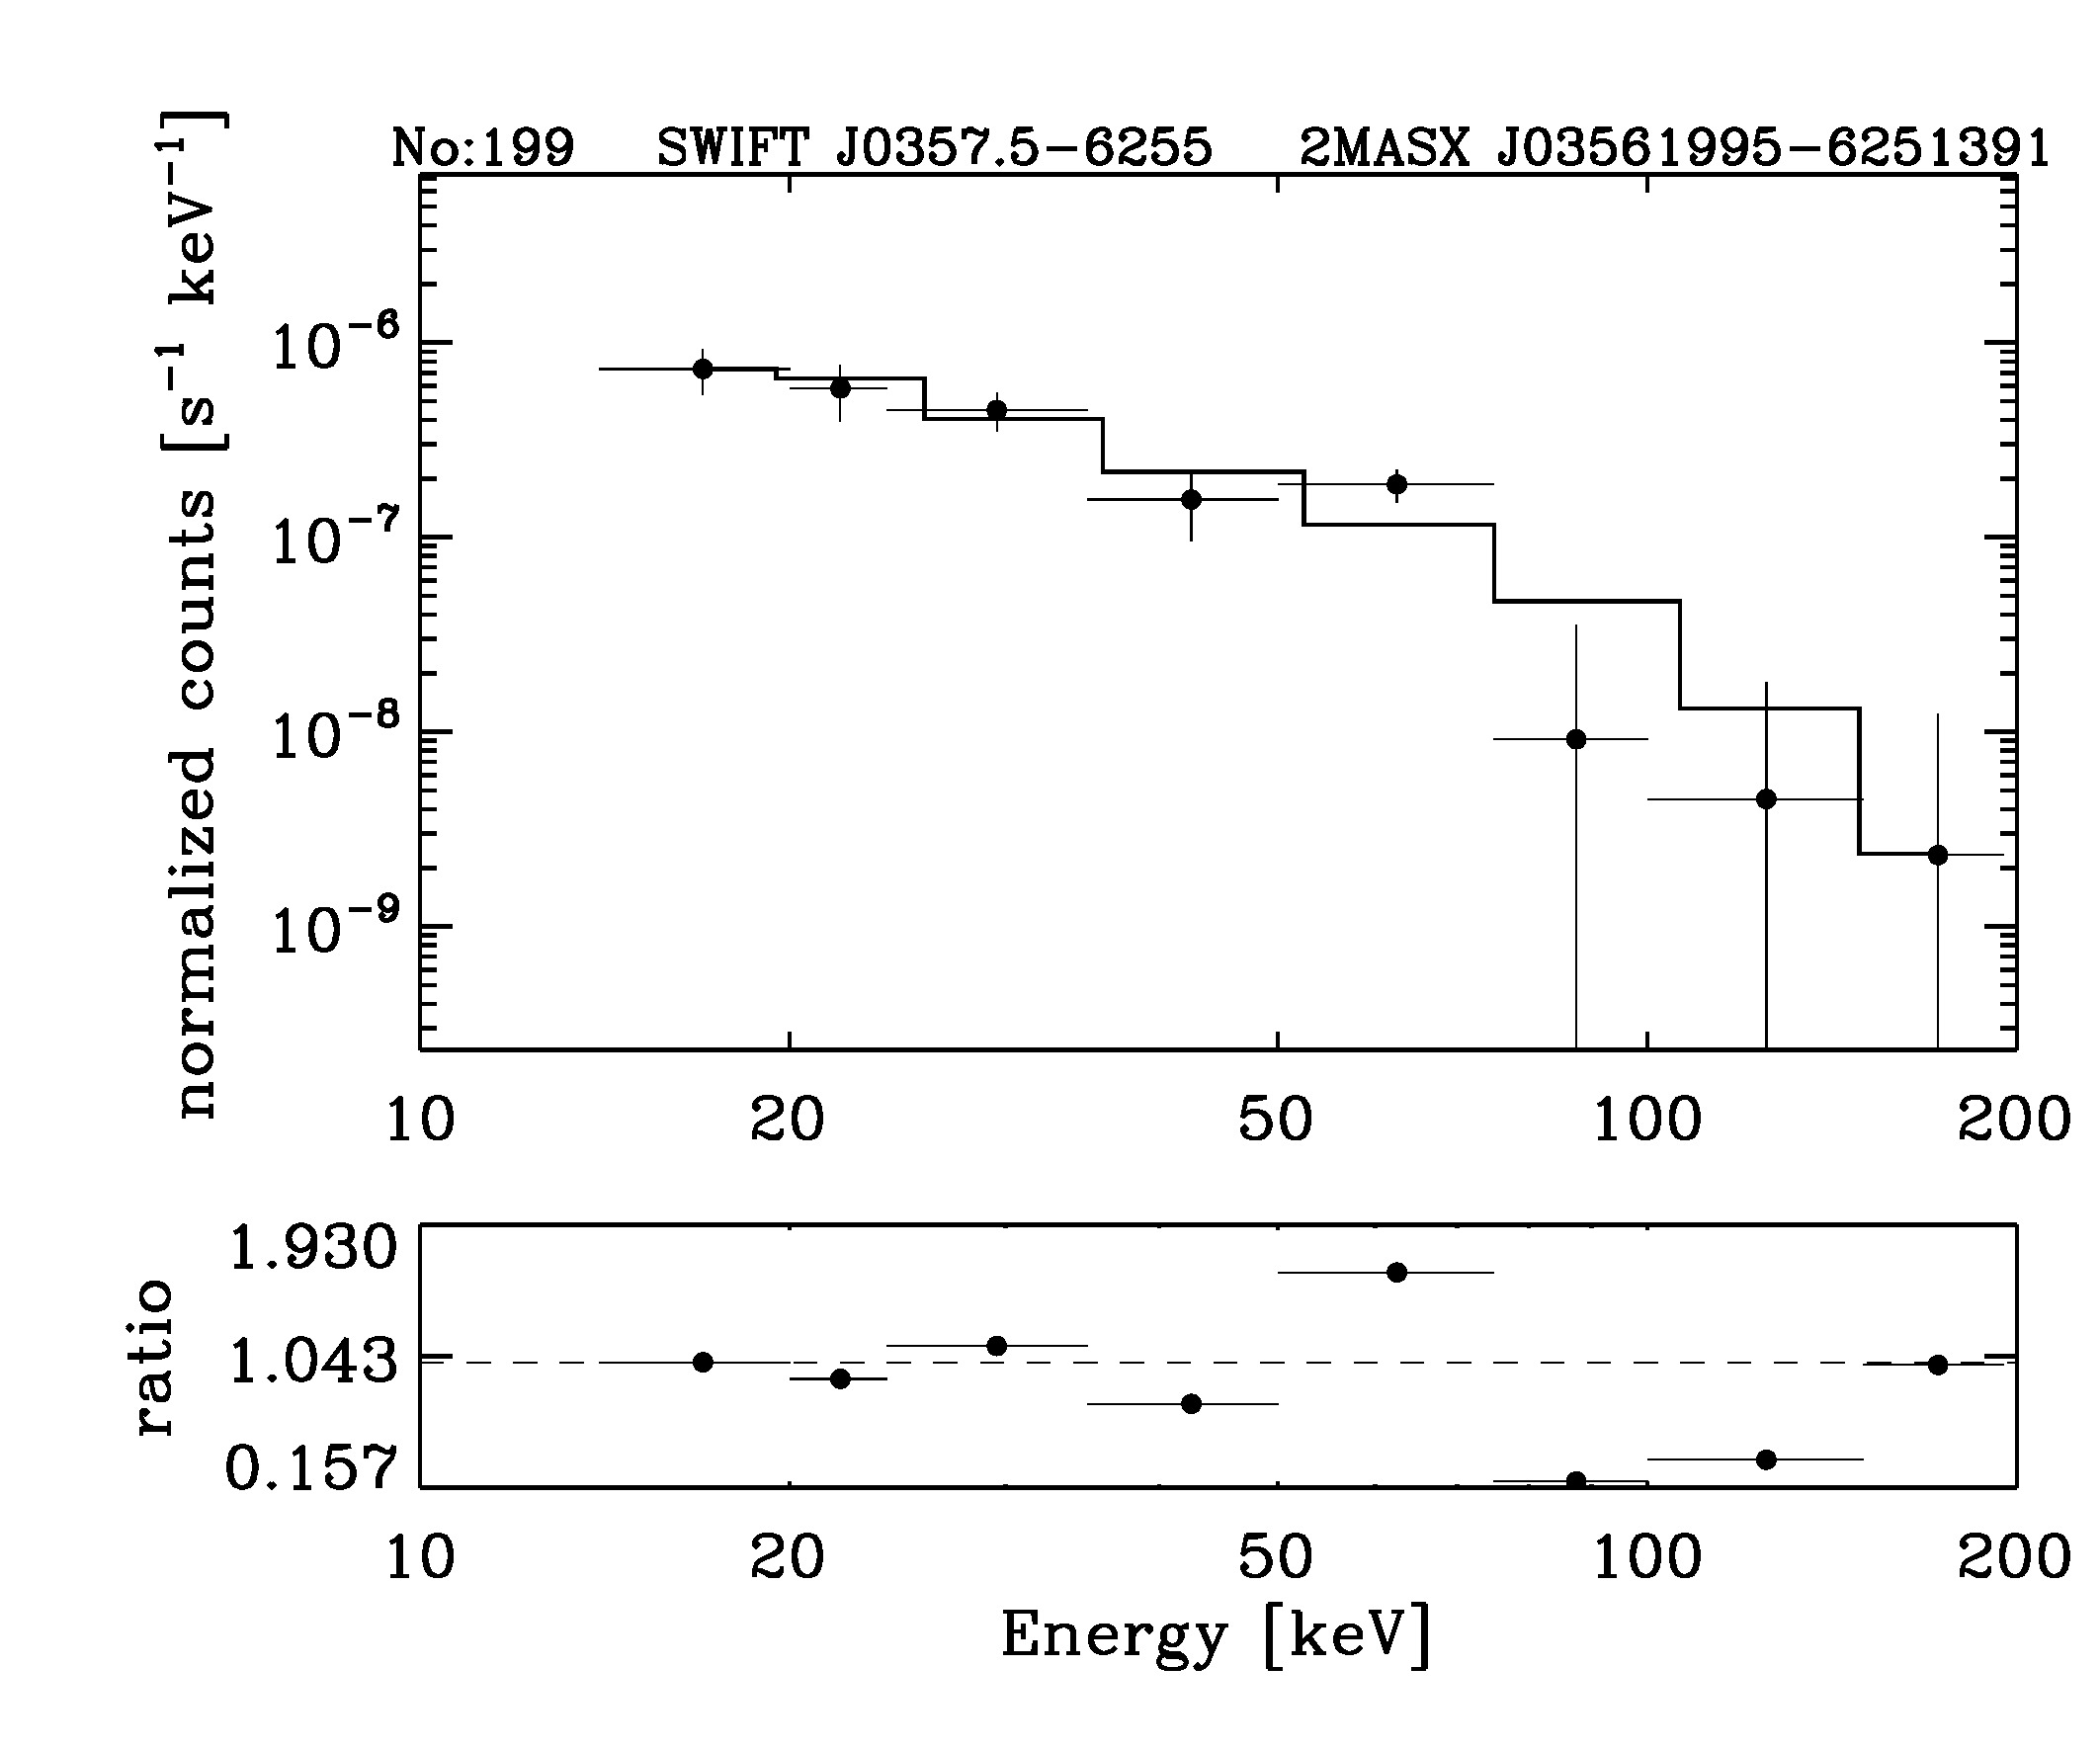 BAT Spectrum for SWIFT J0357.5-6255